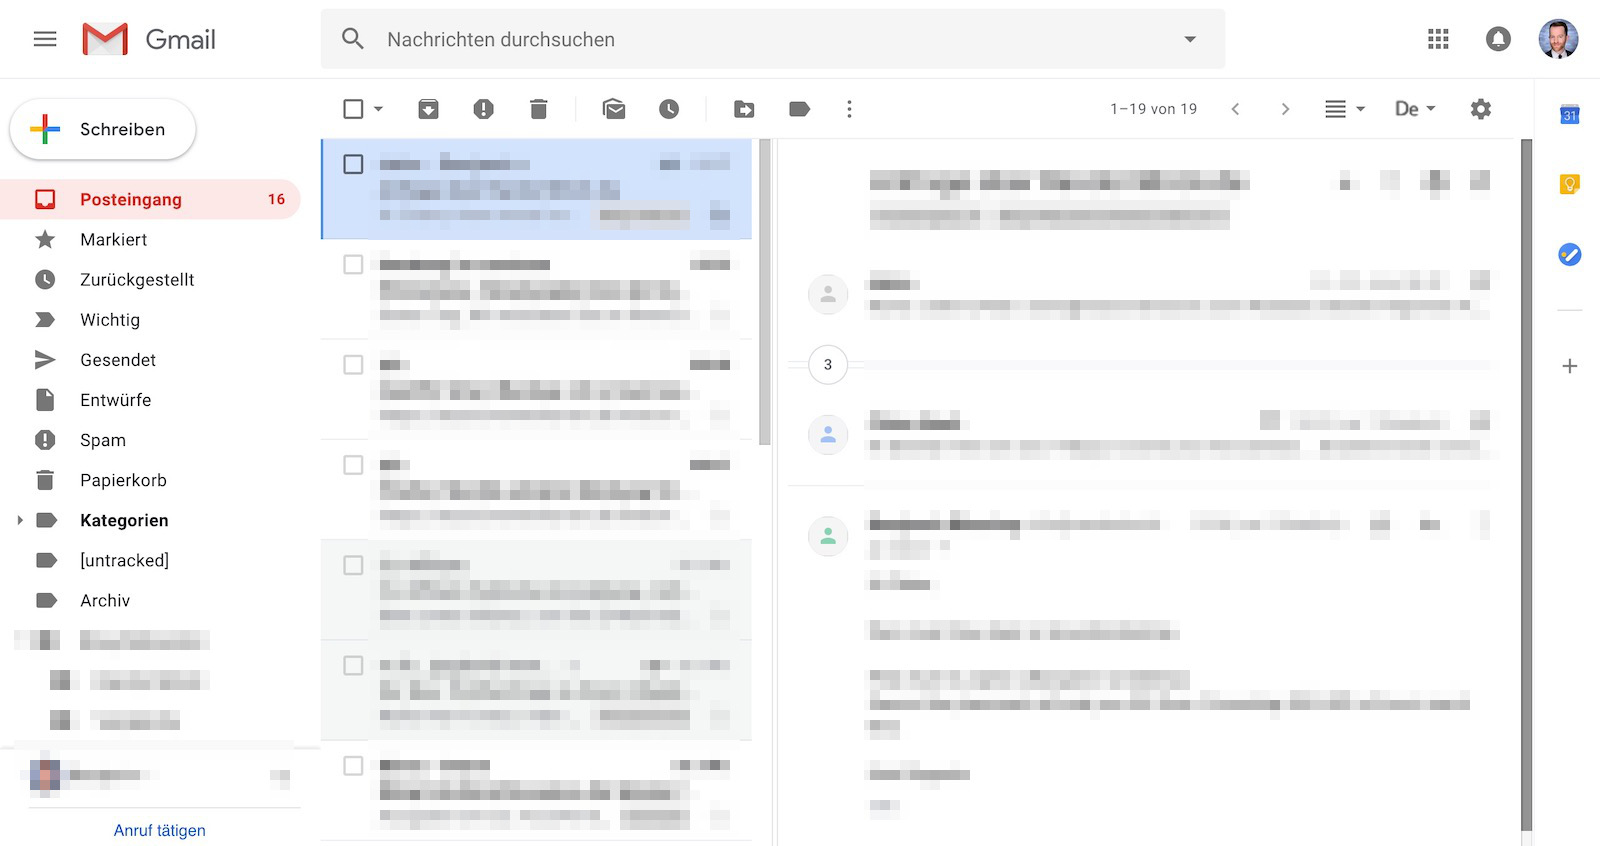 Nachrichtenvorschau in Gmail mit vertikaler Teilung 